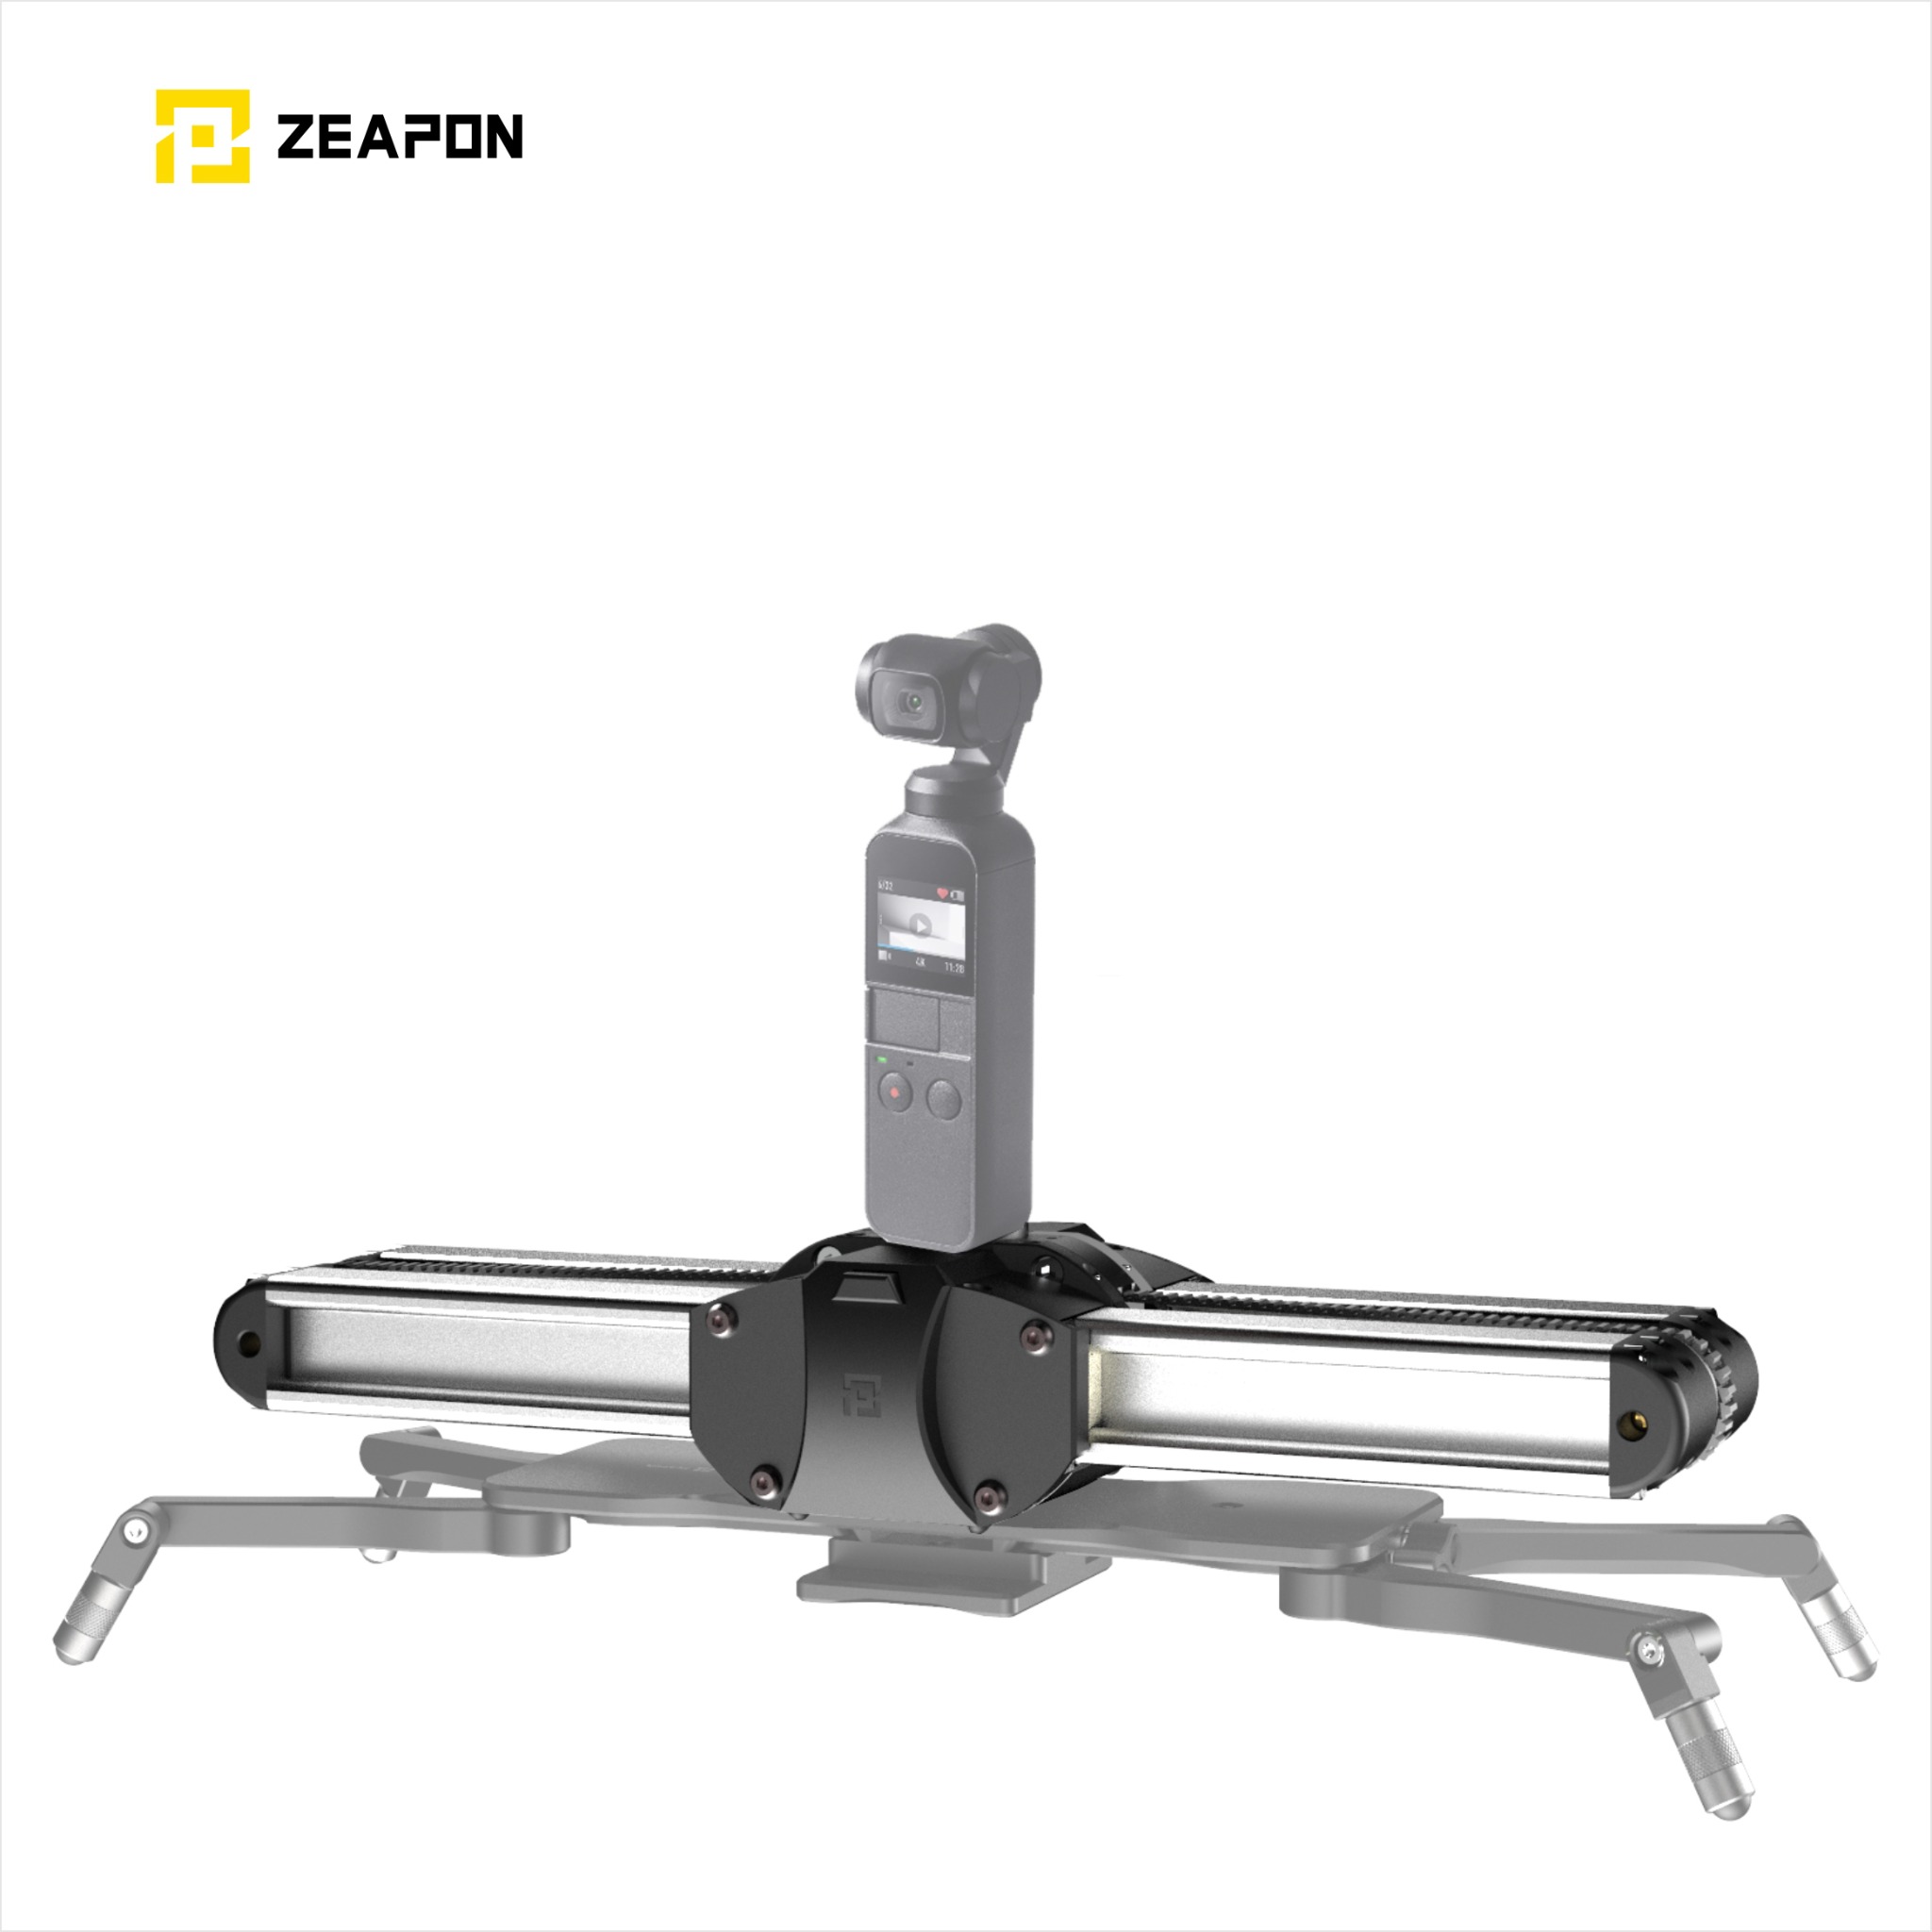 Easylock2 Kit / ZEAPON